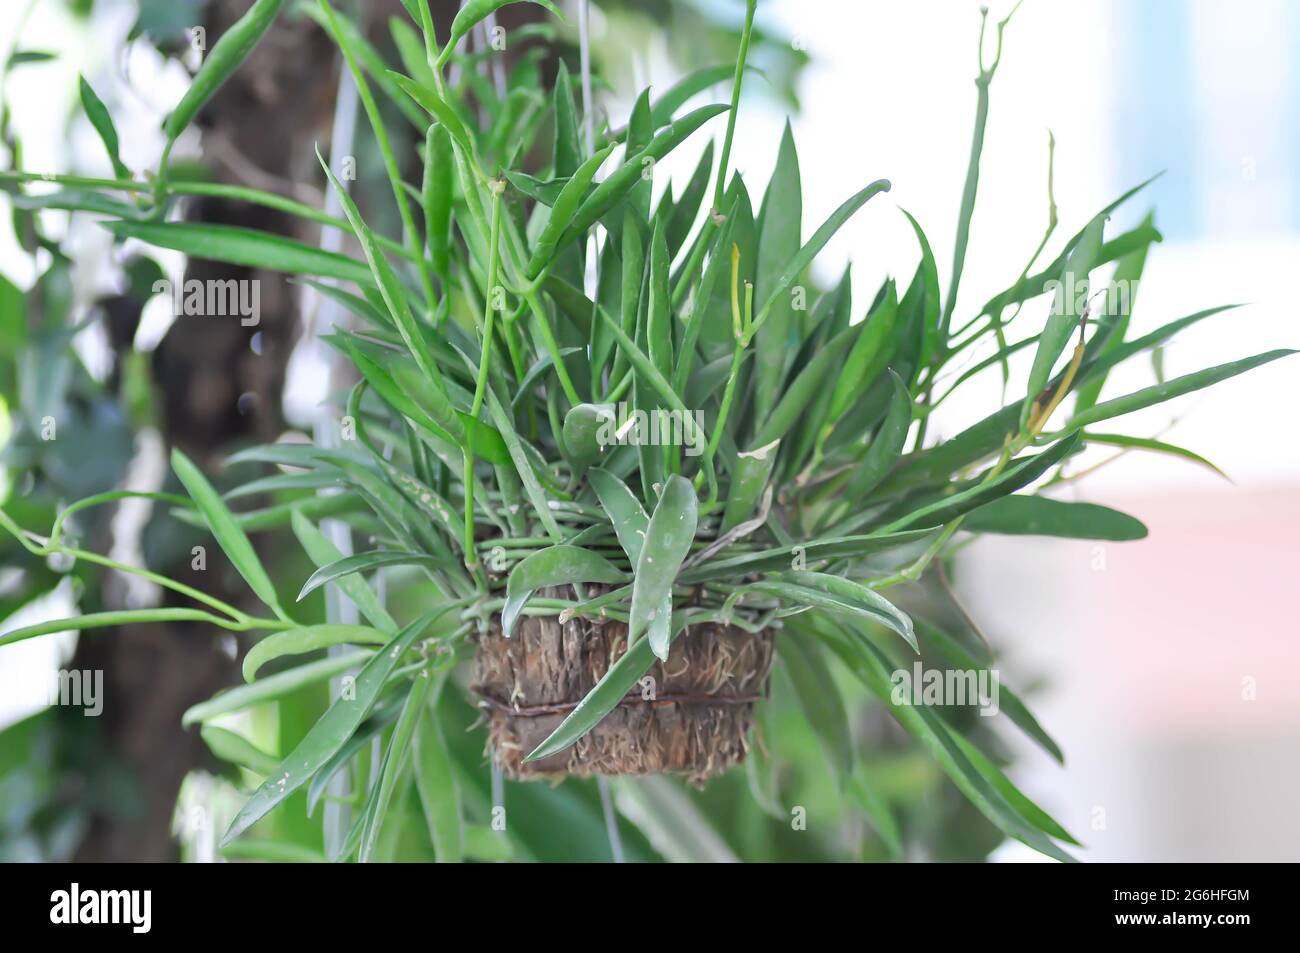 Dischidiopsis, Conchophyllum philippinense or Marsdenia parasitica or Dischidia philippines plant Stock Photo